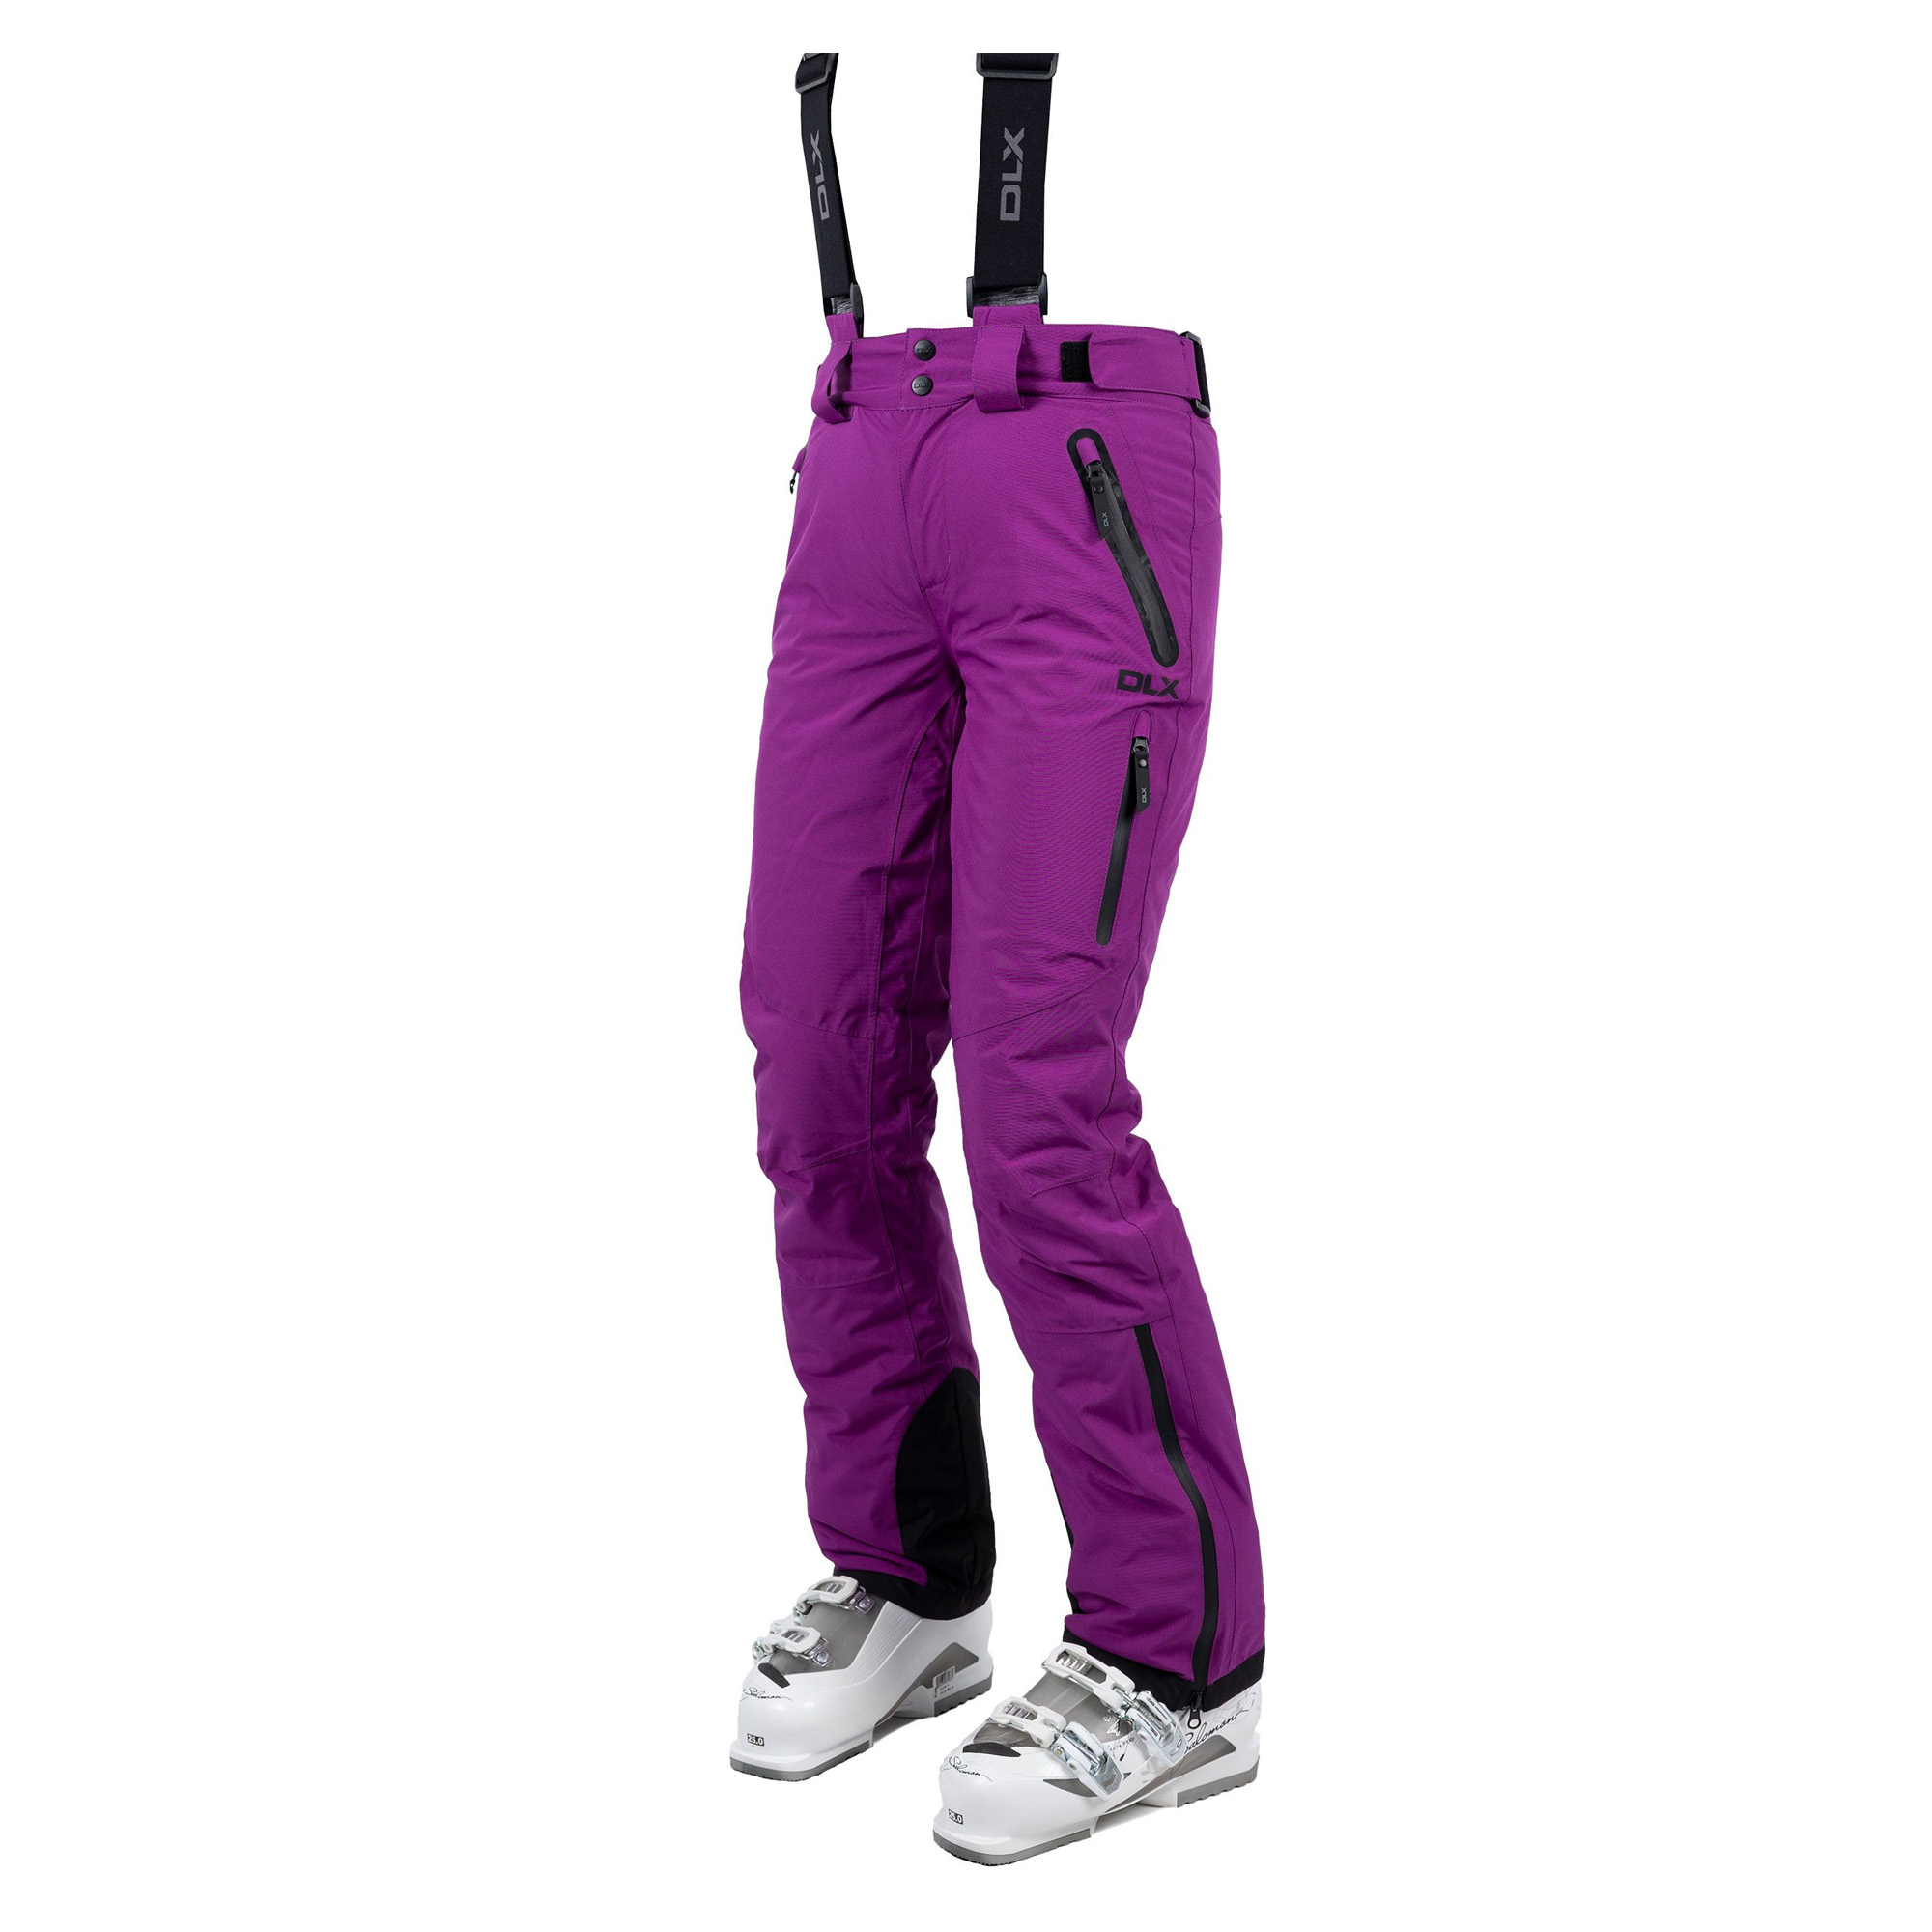 Pantalones De Esquí De Dlx Impermeable Trespass Marisol Ii - purpura - 